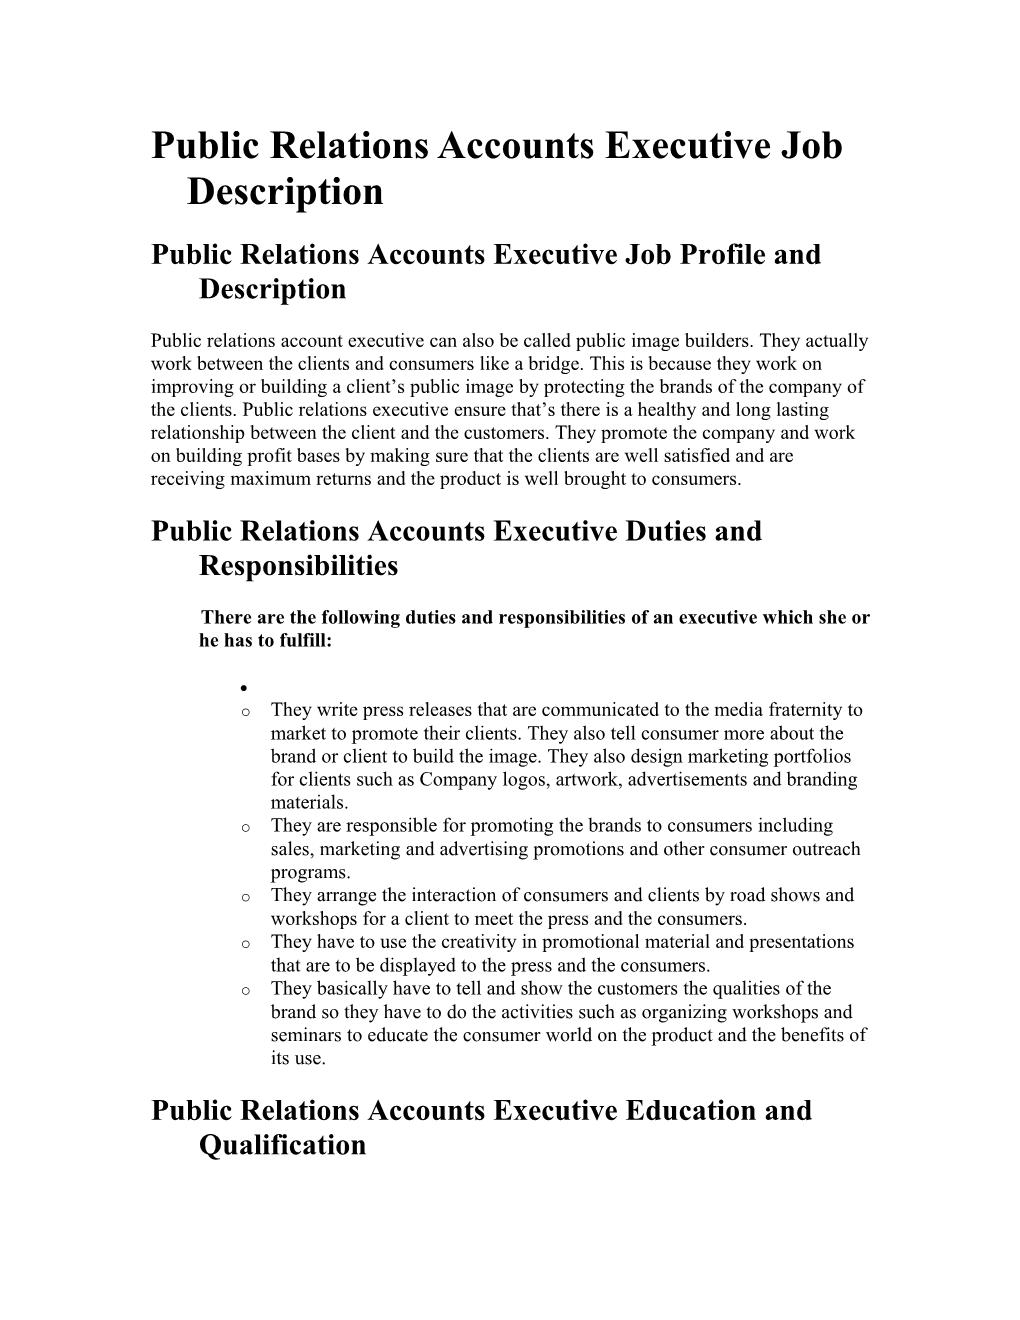 Public Relations Accounts Executive Job Description